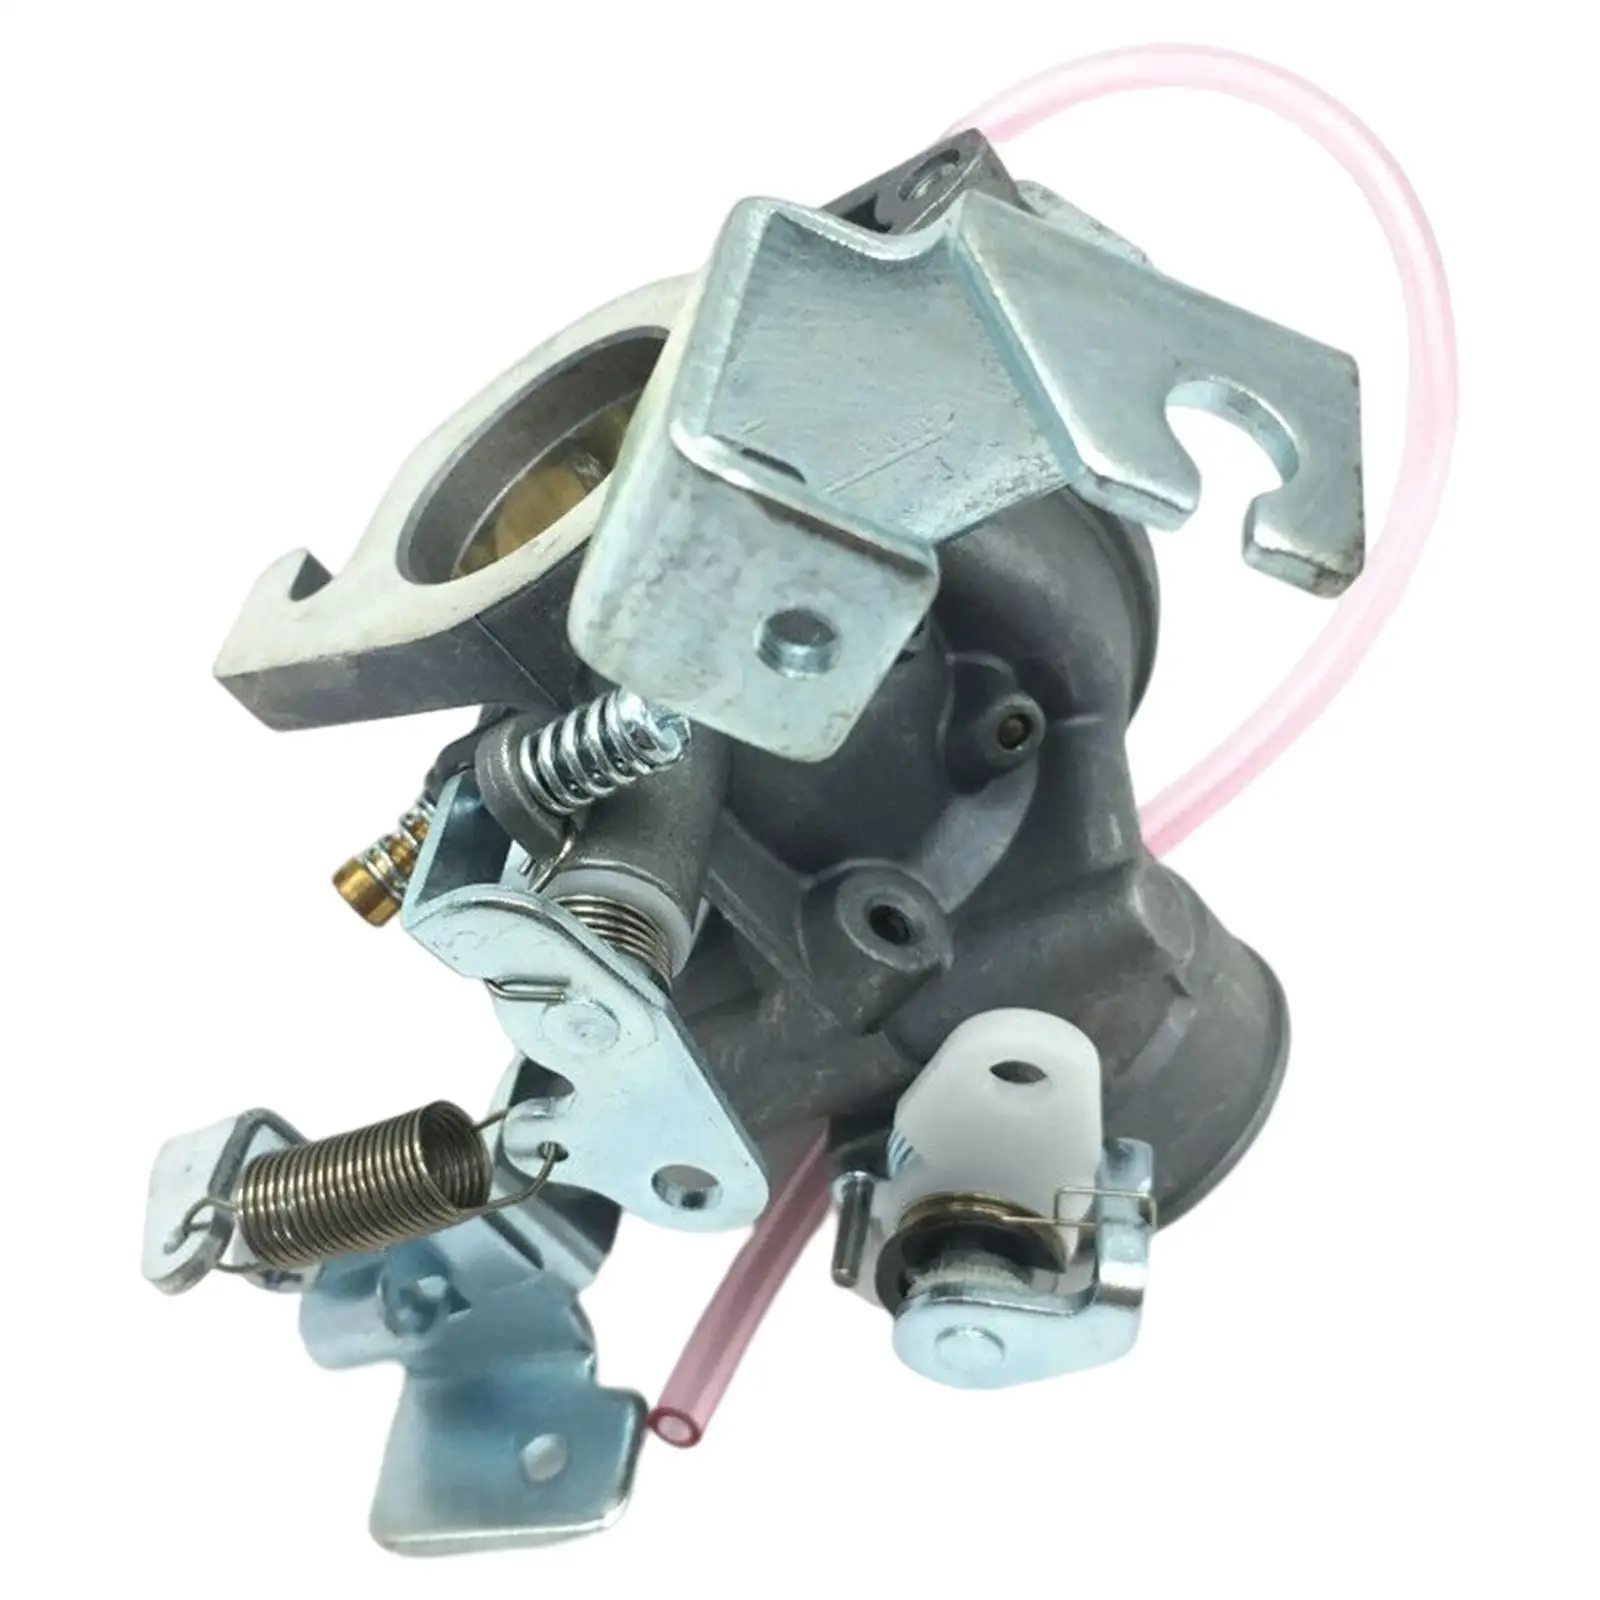 Auto Carburetor Replace J381410102 J38-14101-01 Aluminum J38-14101-00 J38-14101-02 Fit for Yamaha Golf Cart G11 G9 G2 4 Cycle